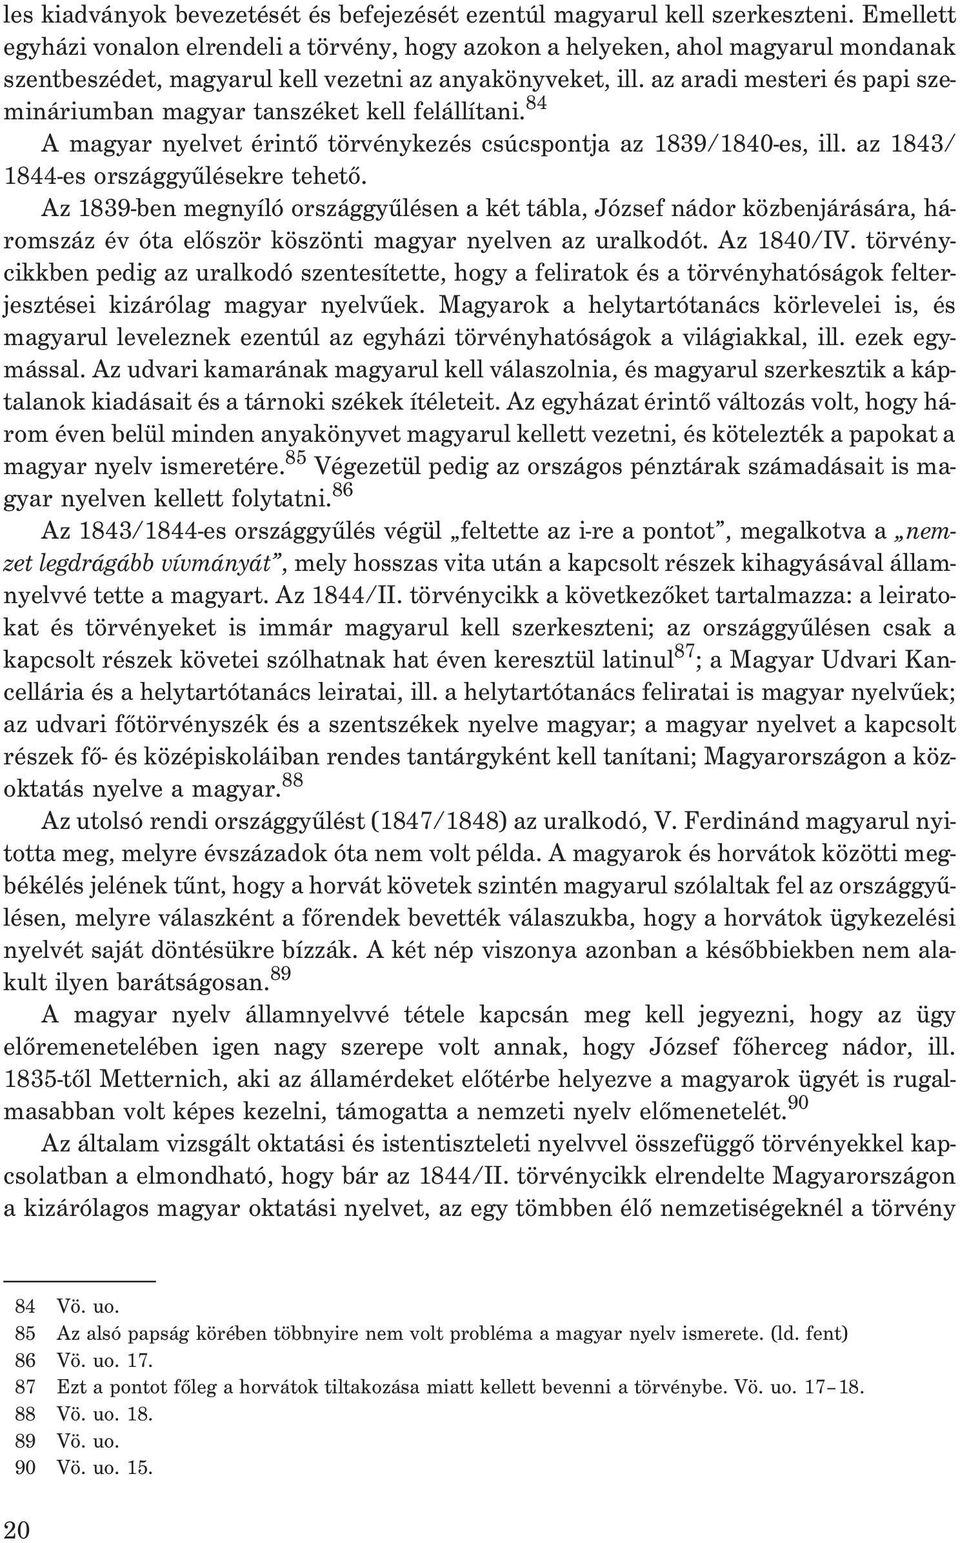 az aradi mesteri és papi szemináriumban magyar tanszéket kell felállítani. 84 A magyar nyelvet érintõ törvénykezés csúcspontja az 1839/1840-es, ill. az 1843/ 1844-es országgyûlésekre tehetõ.